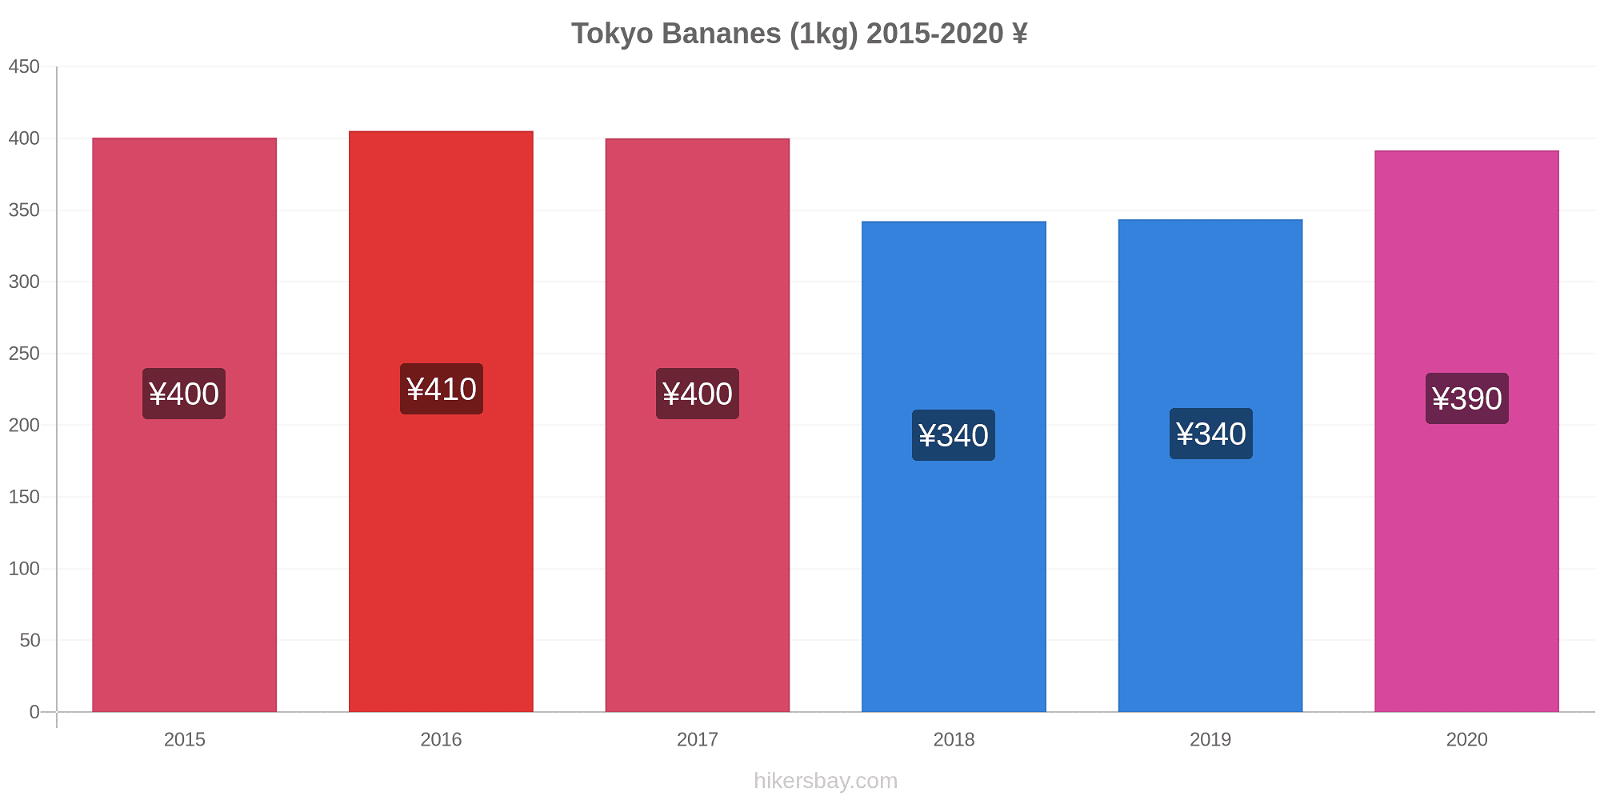 Tokyo changements de prix Bananes (1kg) hikersbay.com